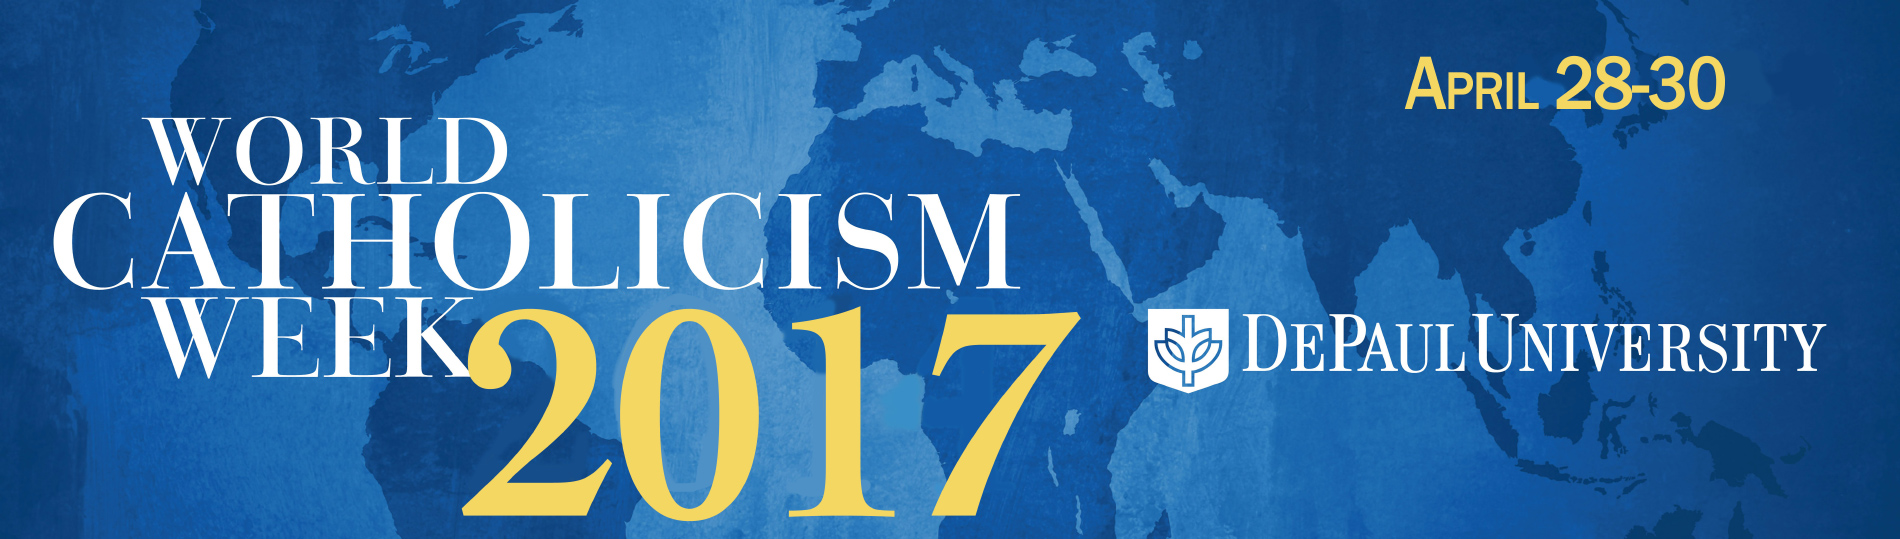 Header for World Catholicism Week 2017 (April 28-30)